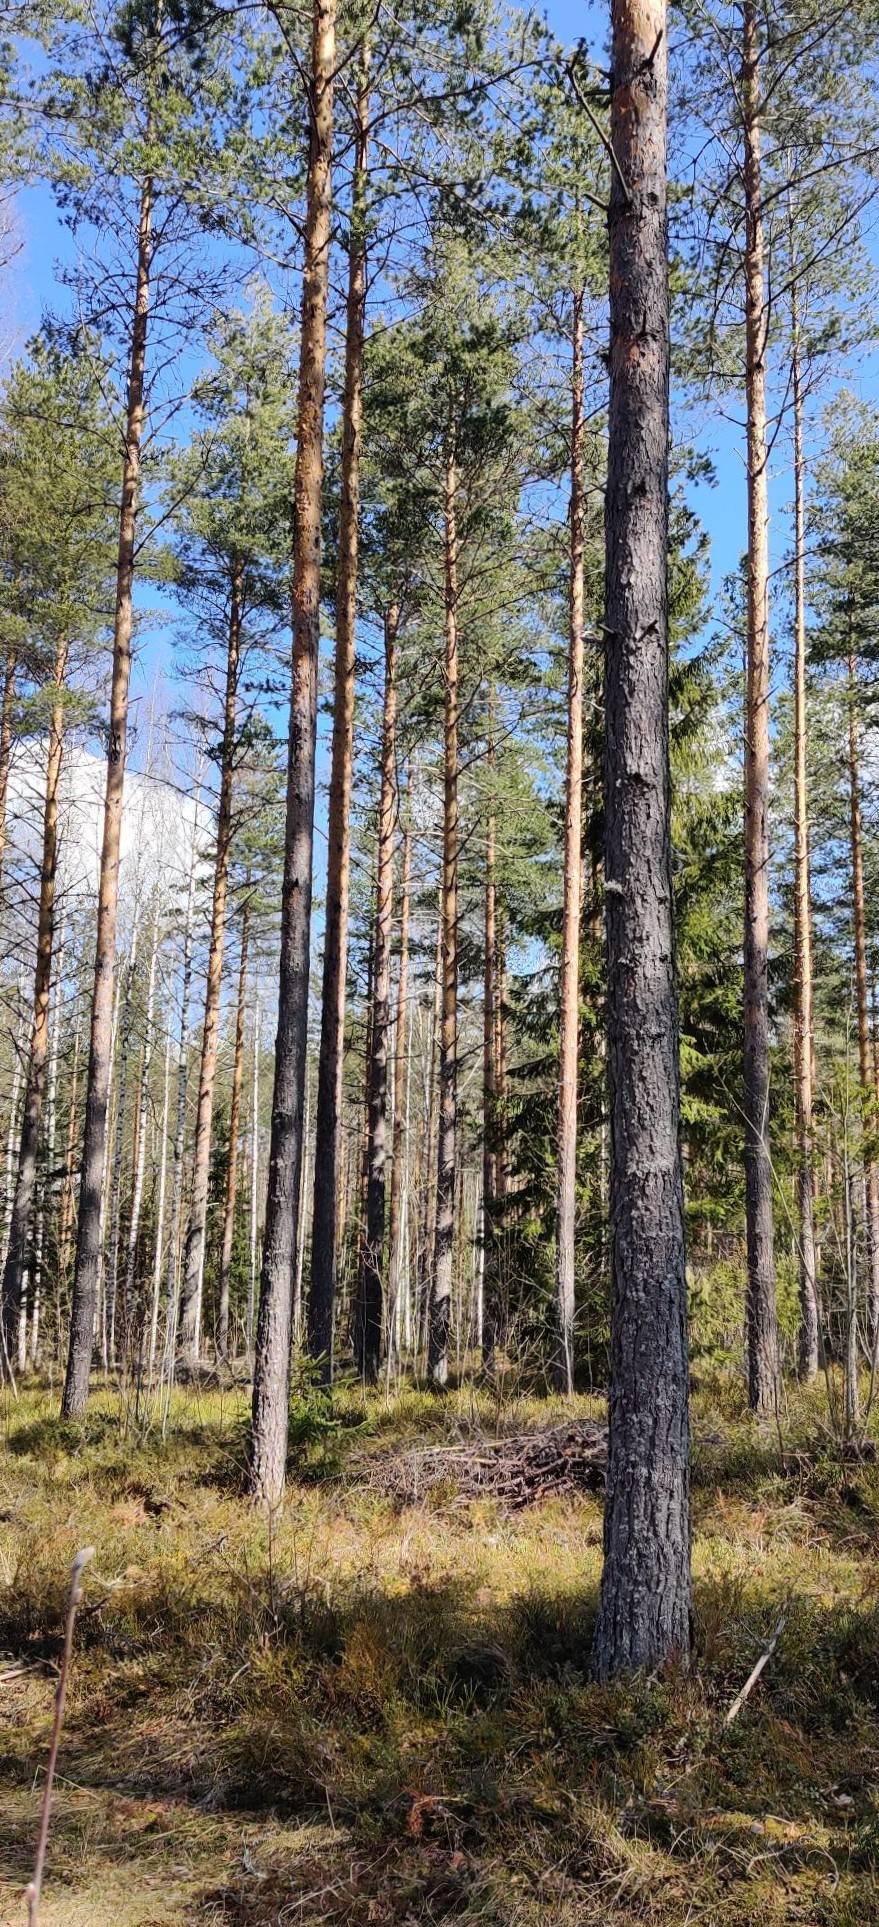 Kansikuva kohteelle Puumala, Sepänkylä, Nurmela 1:66, 13,857 ha